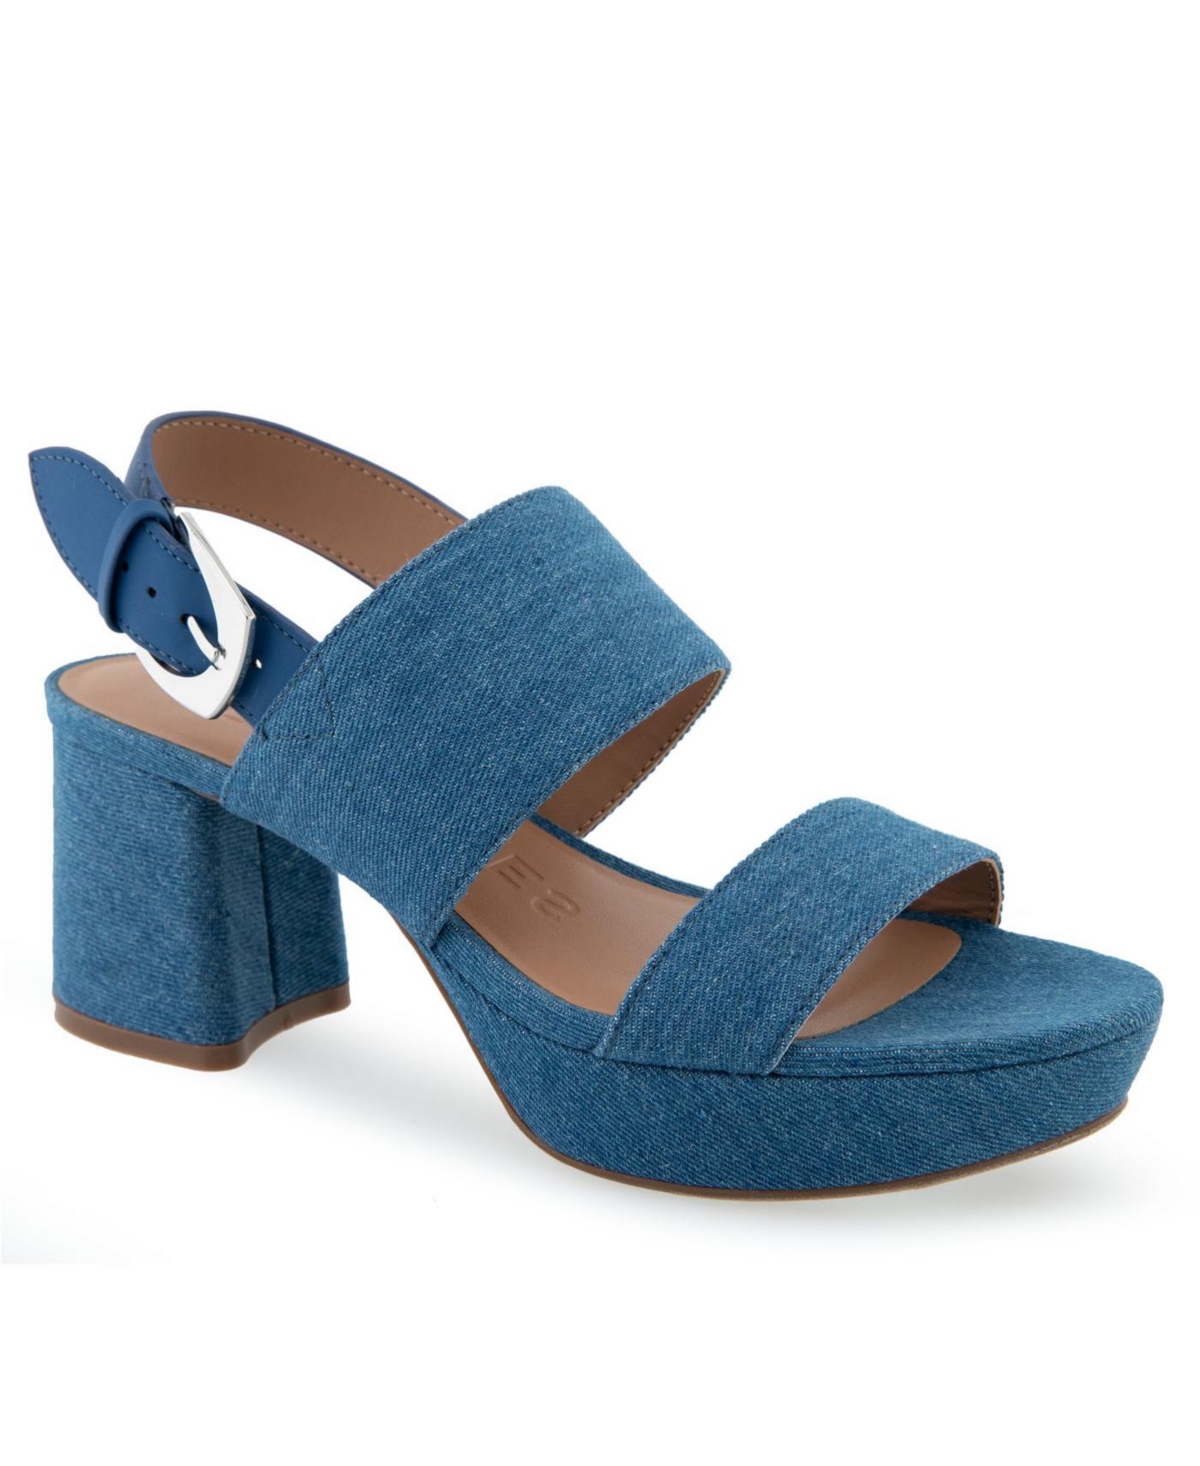 Aerosoles Women's Camilia Pump Heel Sandals In Medium Blue Denim